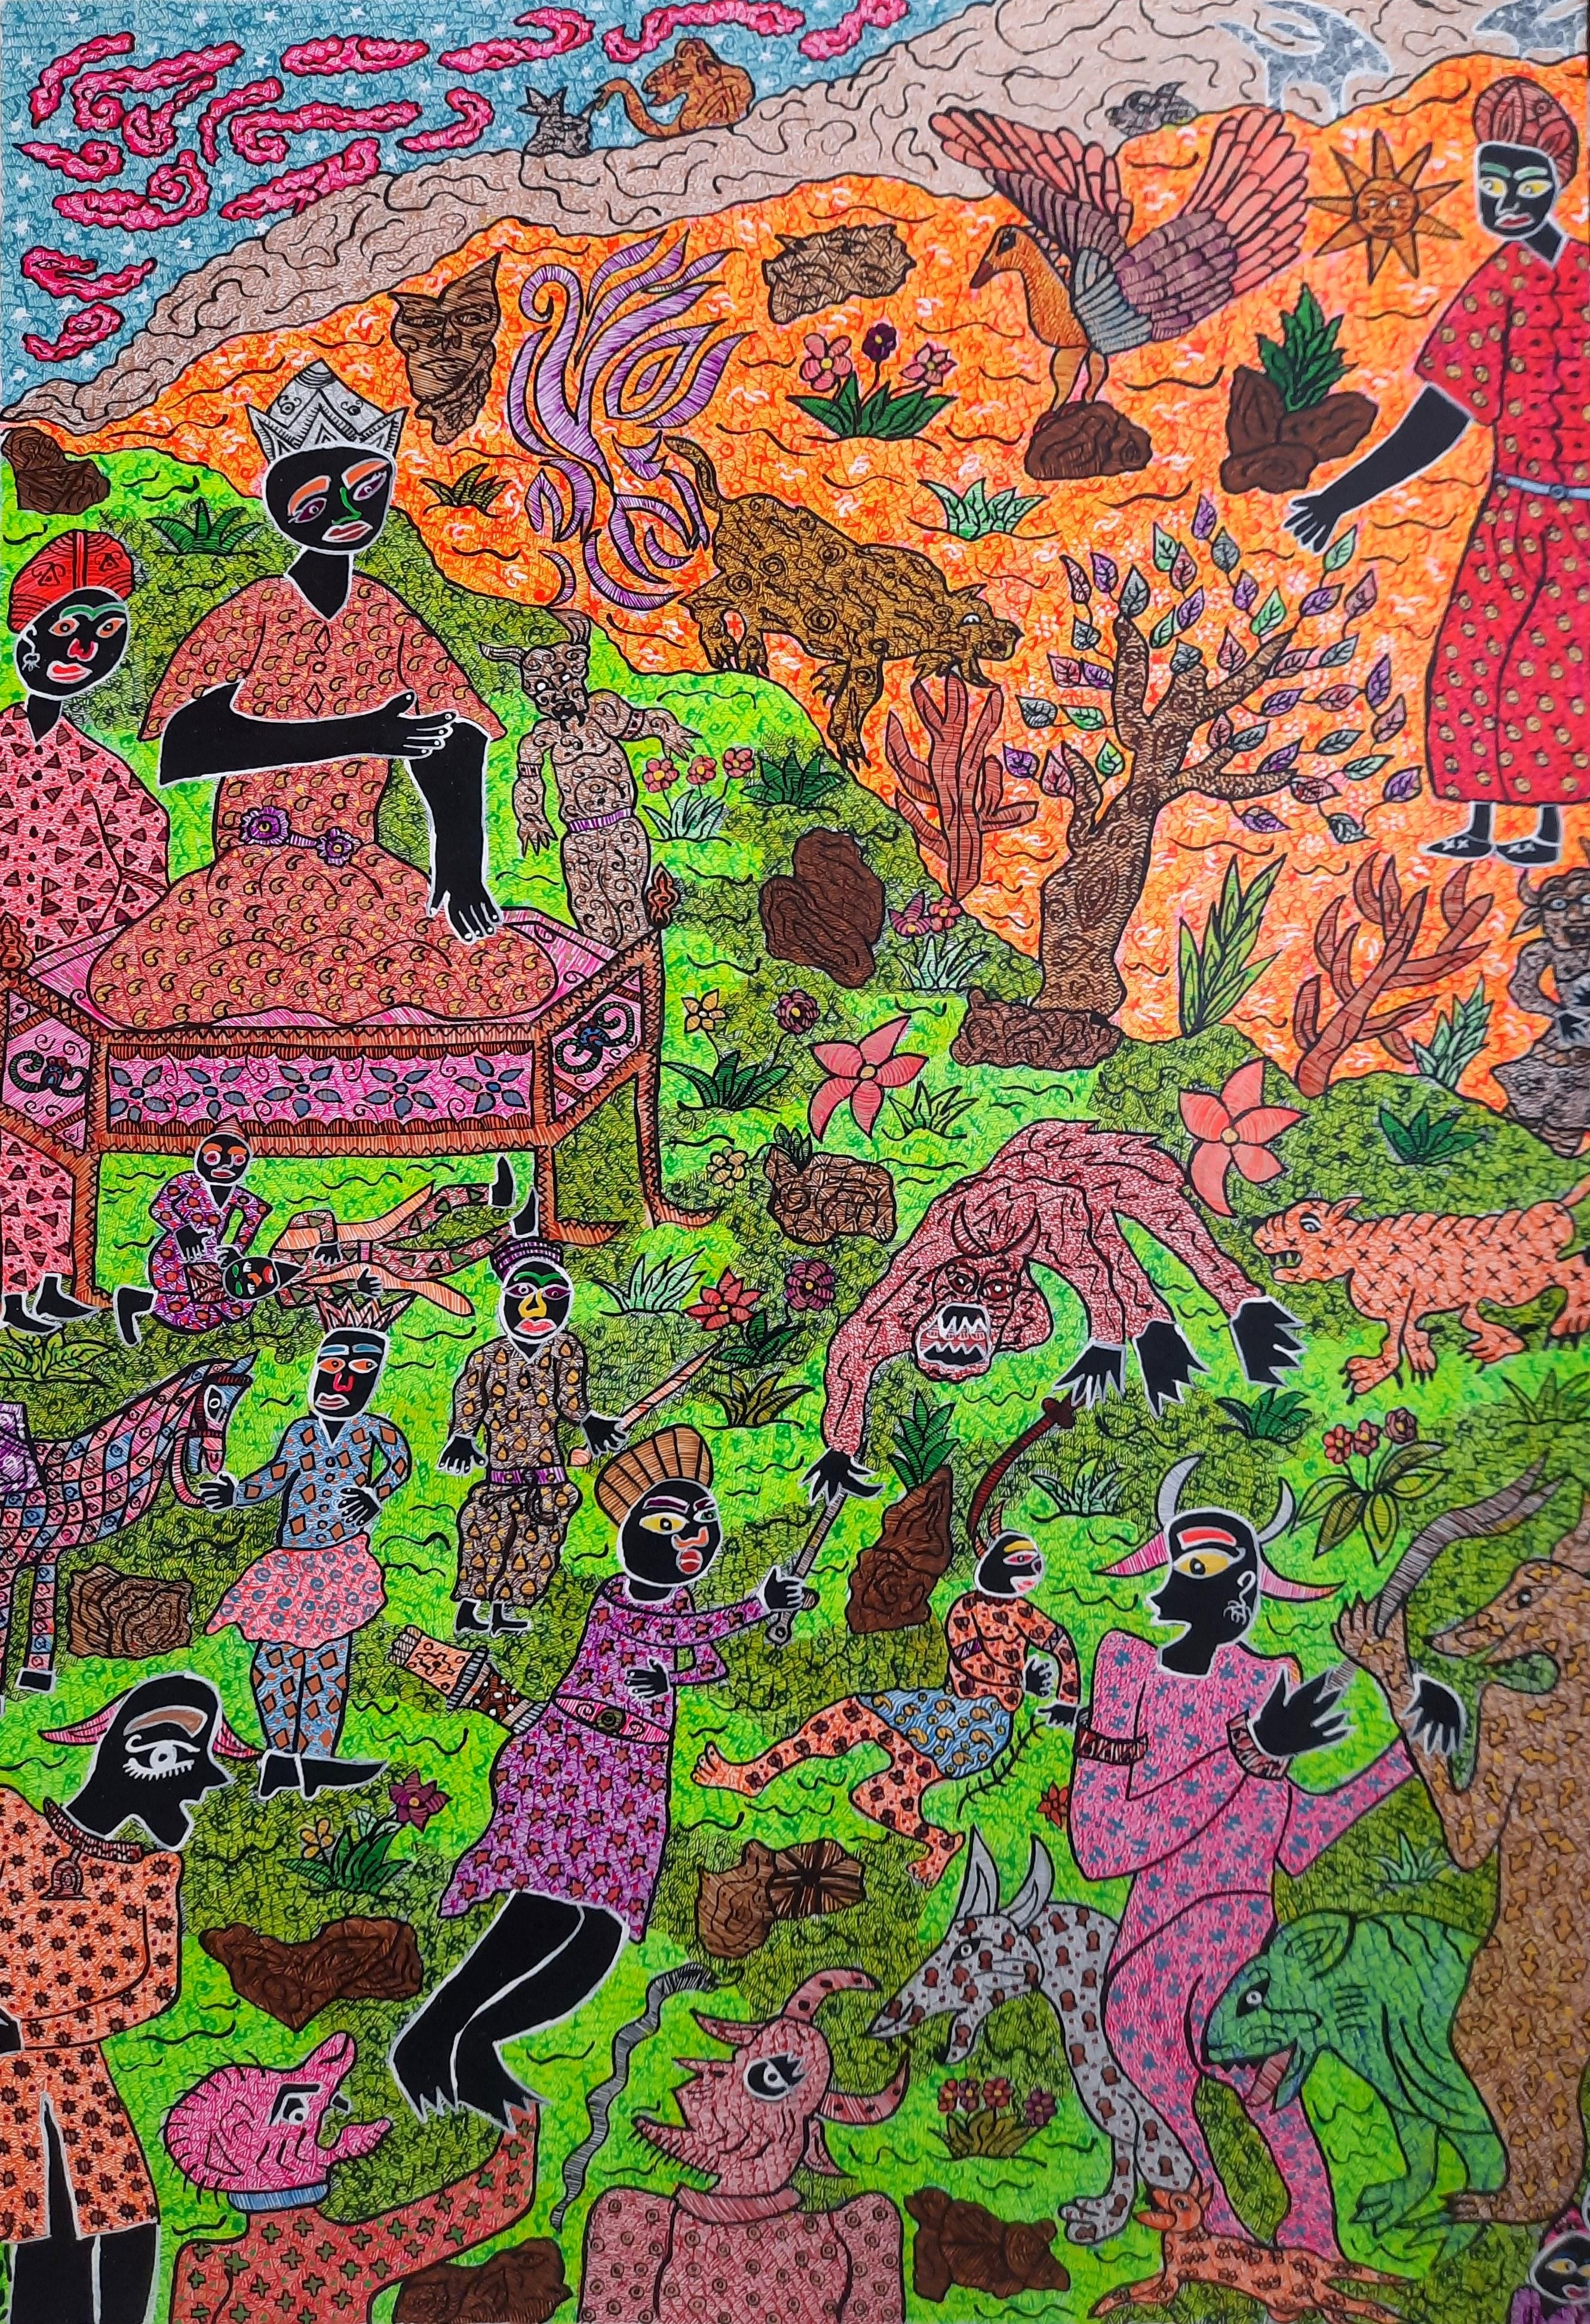 Acrylfarbe auf Leinwand
Einzigartige Arbeit
Handsigniert unten links vom Künstler

DIE TAUSENDUNDEINE NACHT DES MOHAMMAD ARIYAEI

"Sanftheit und orientalische Weisheit folgen auf das überladene Brodeln, das wir von der vorangegangenen, bewusst art